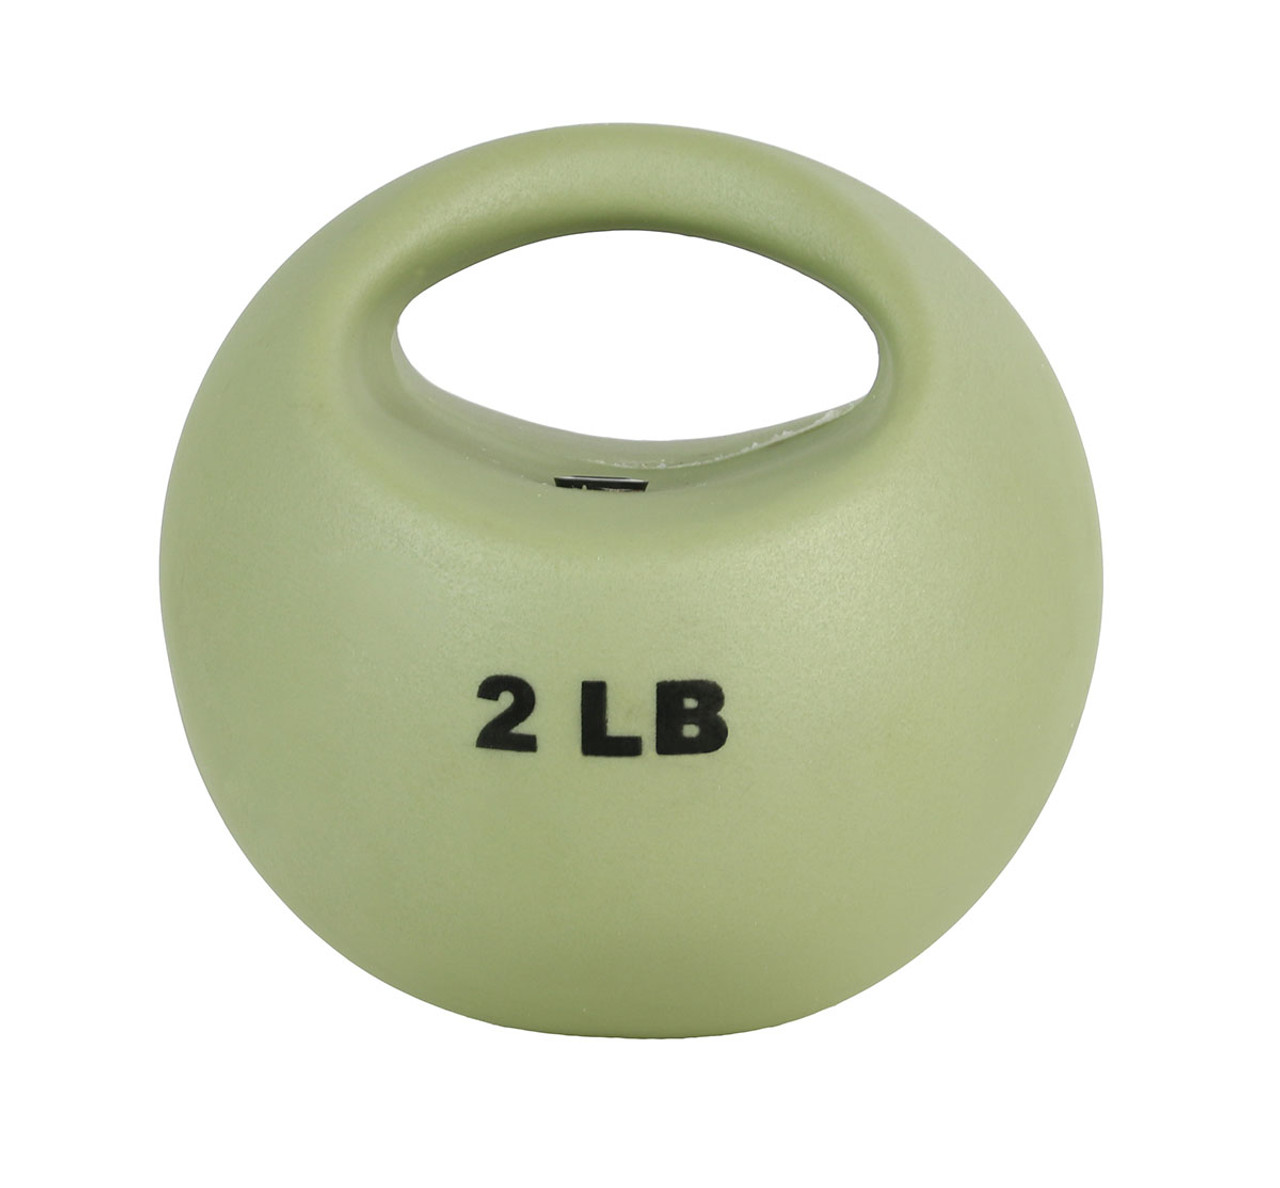 CanDo¨ One Handle Medicine Ball - 2 lb - Tan